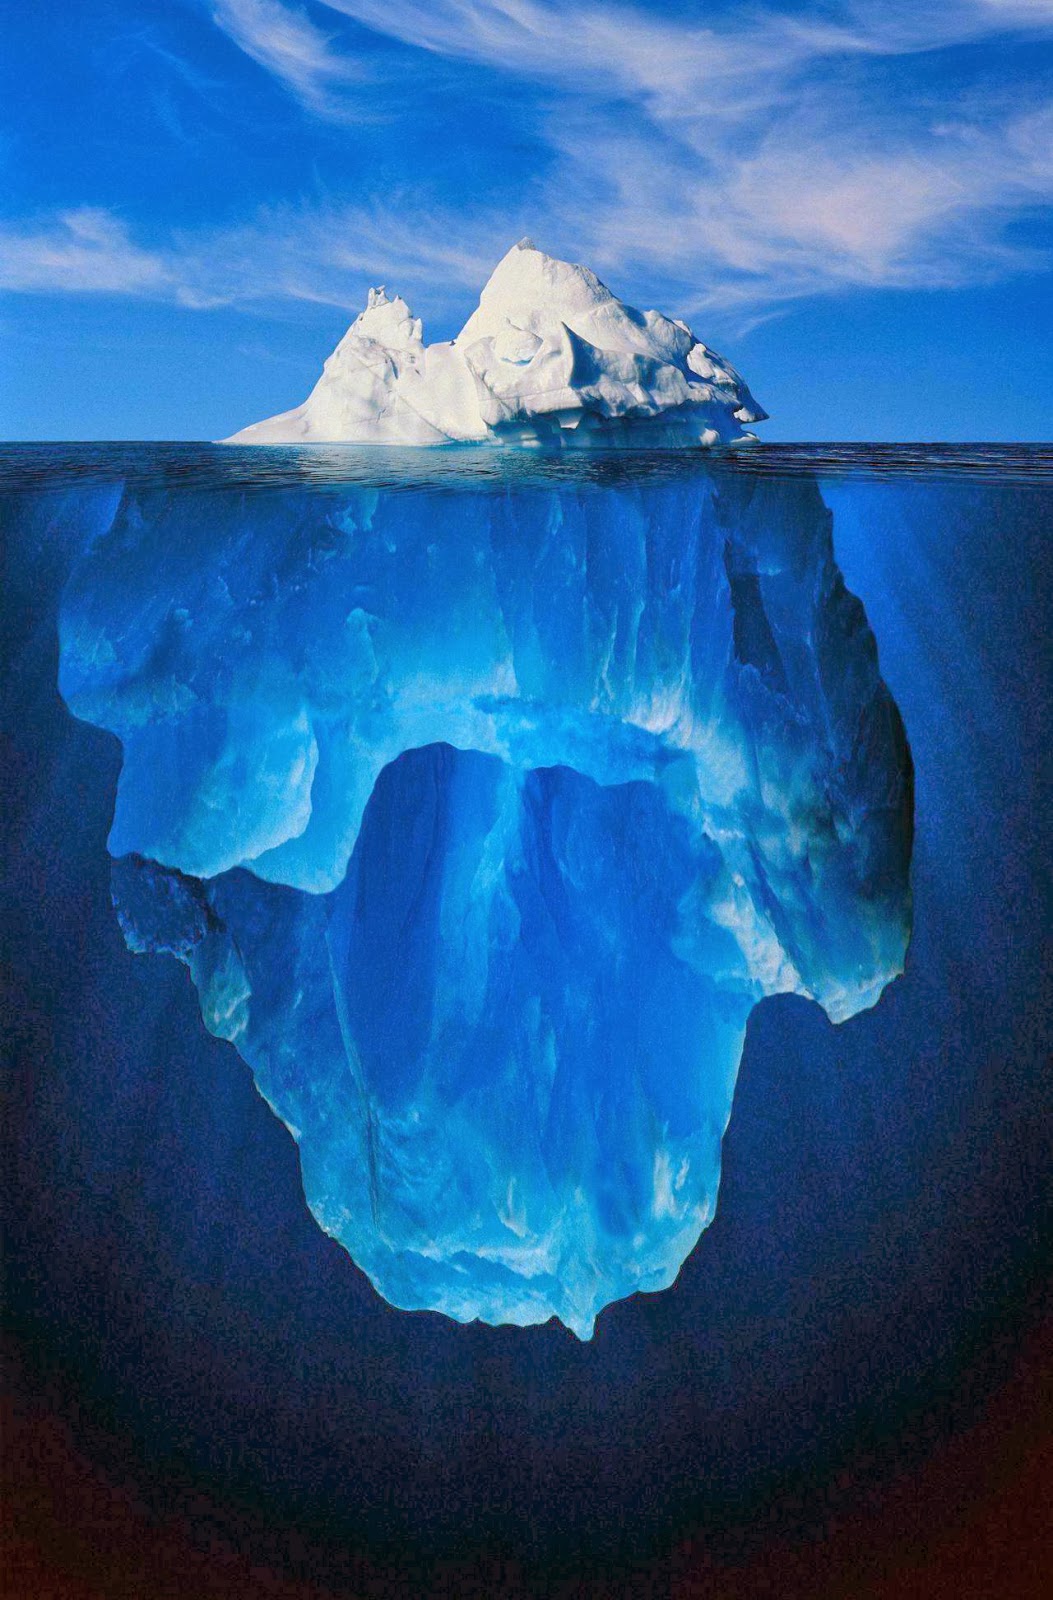 http://3.bp.blogspot.com/-D9rZ-Tof4pQ/Uqidd4hk5jI/AAAAAAAAN64/SHsSH0-bc6E/s1600/iceberg.jpg